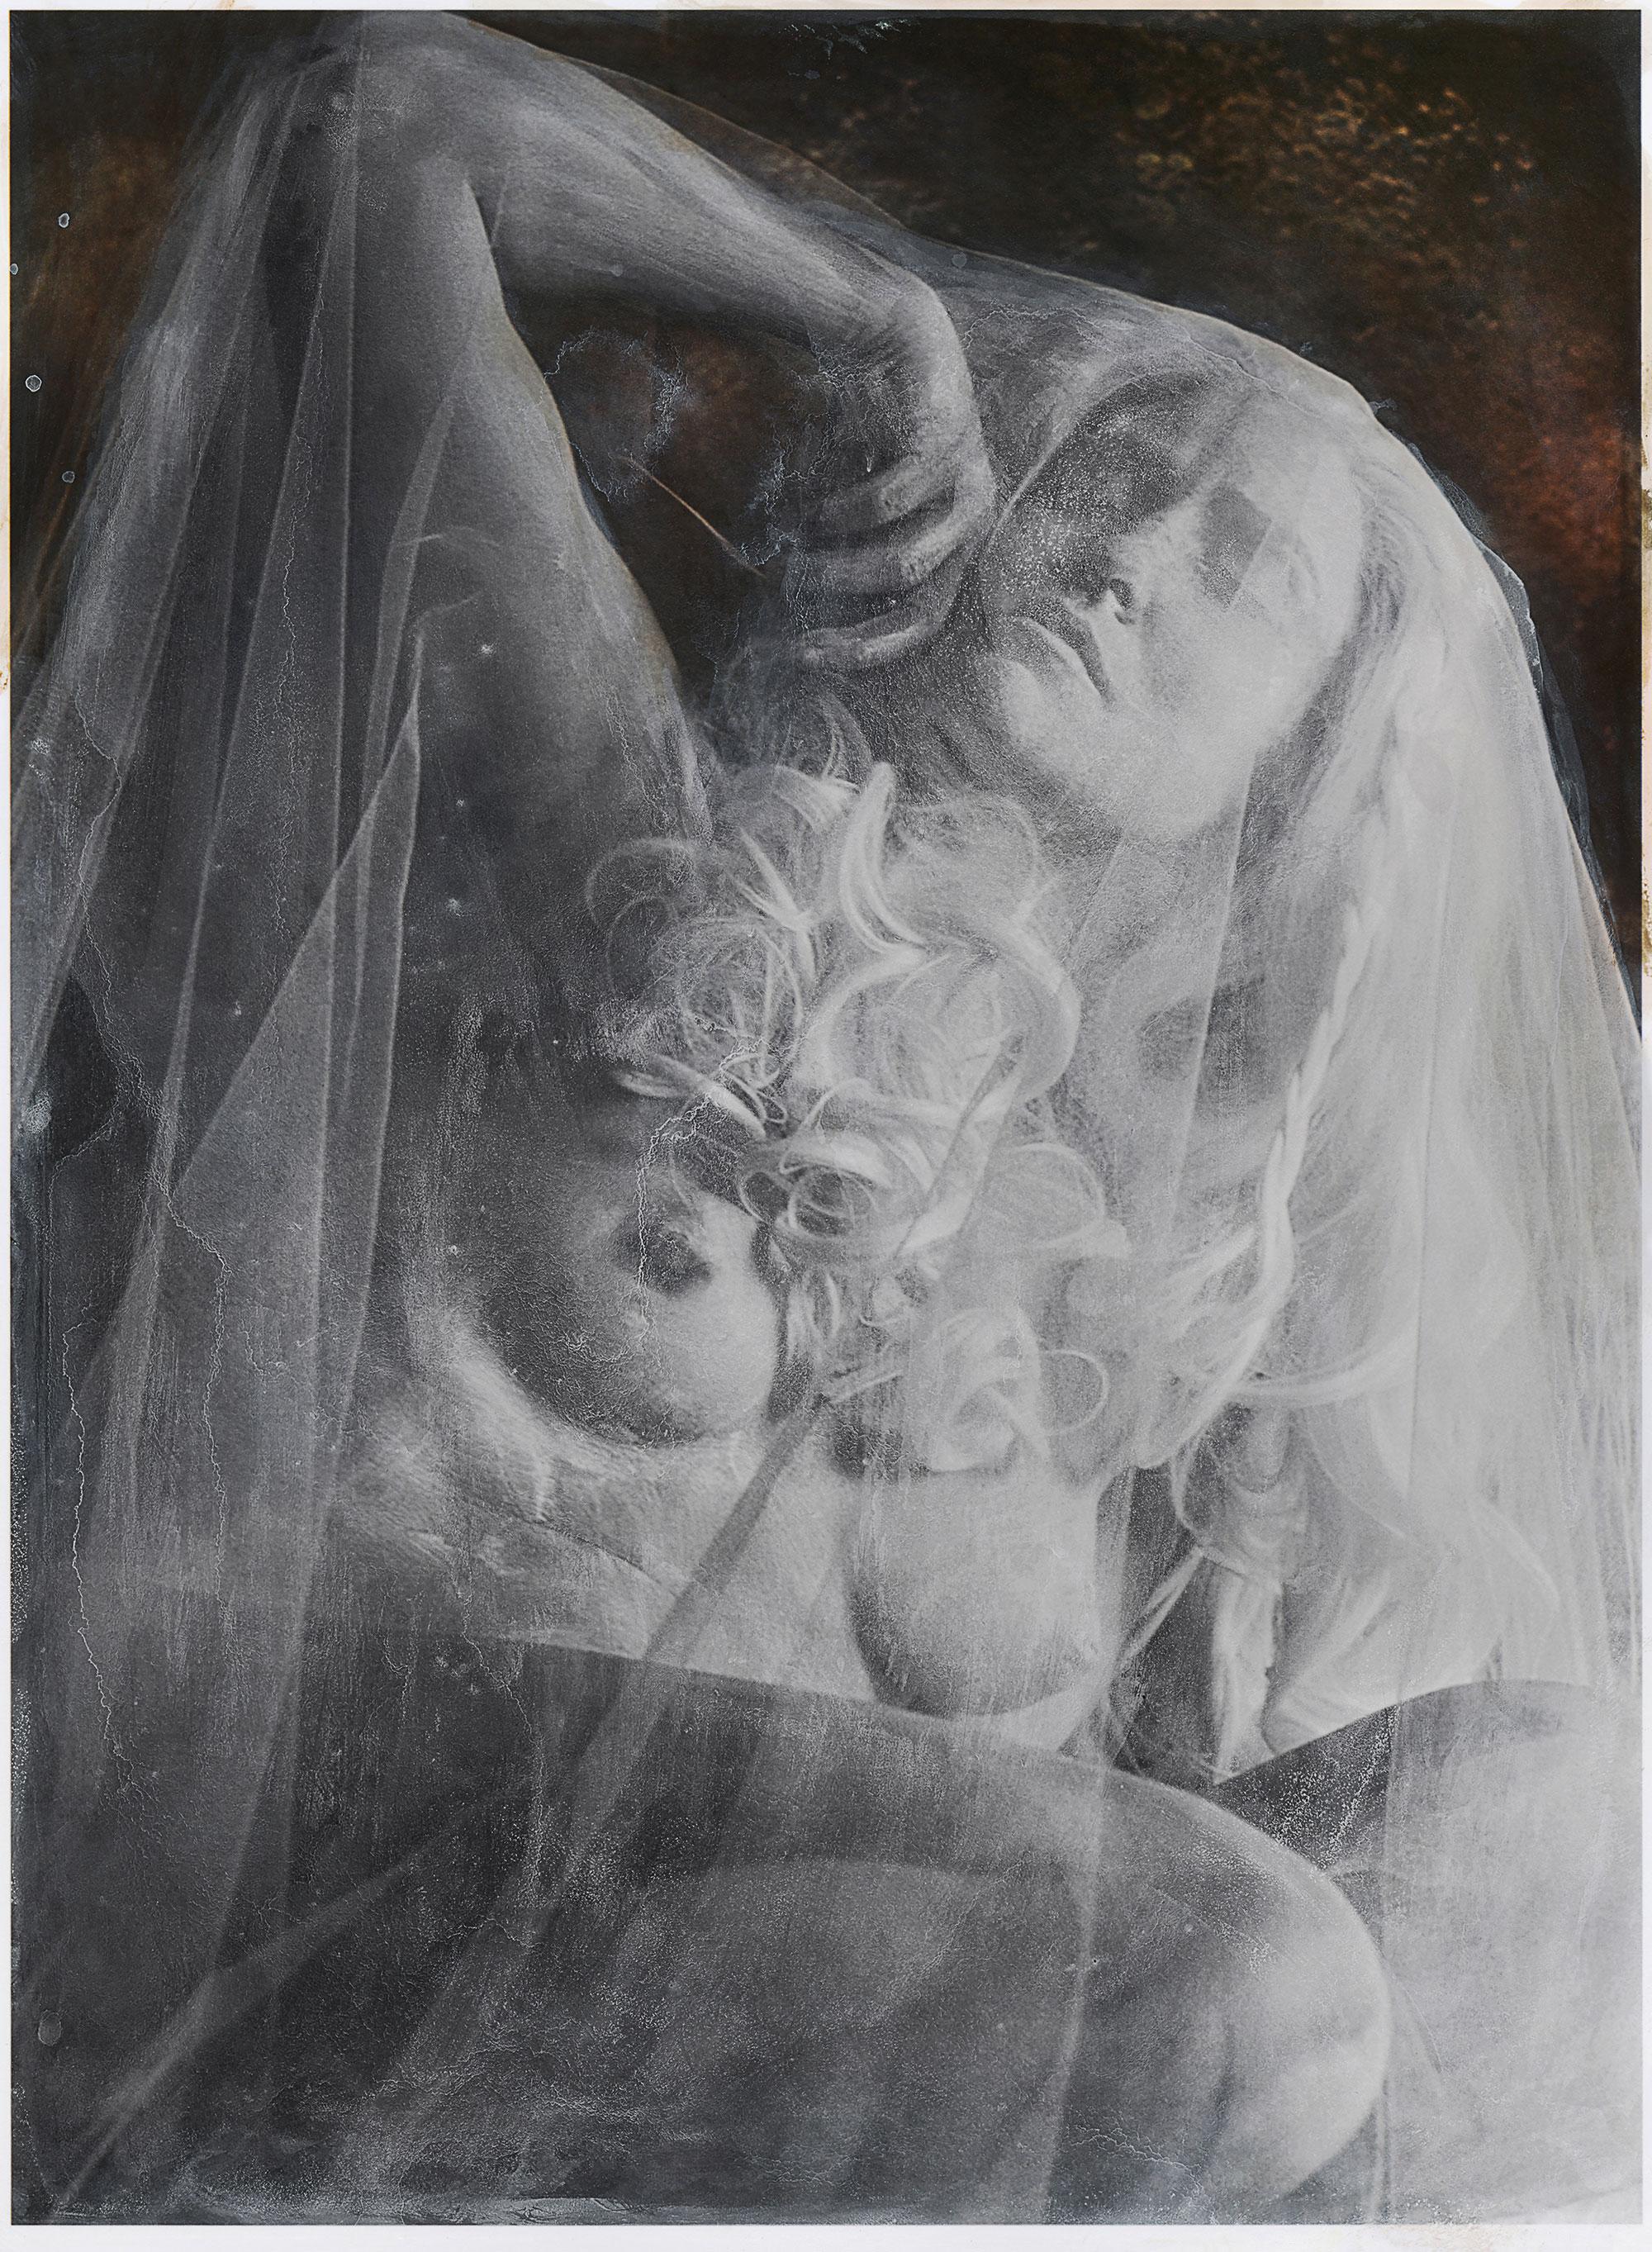 Katie Eleanor Nude Photograph – Handkolorierter gerahmter Druck einer halben nackten Skulptur aus Marmor wie eine weibliche Statue